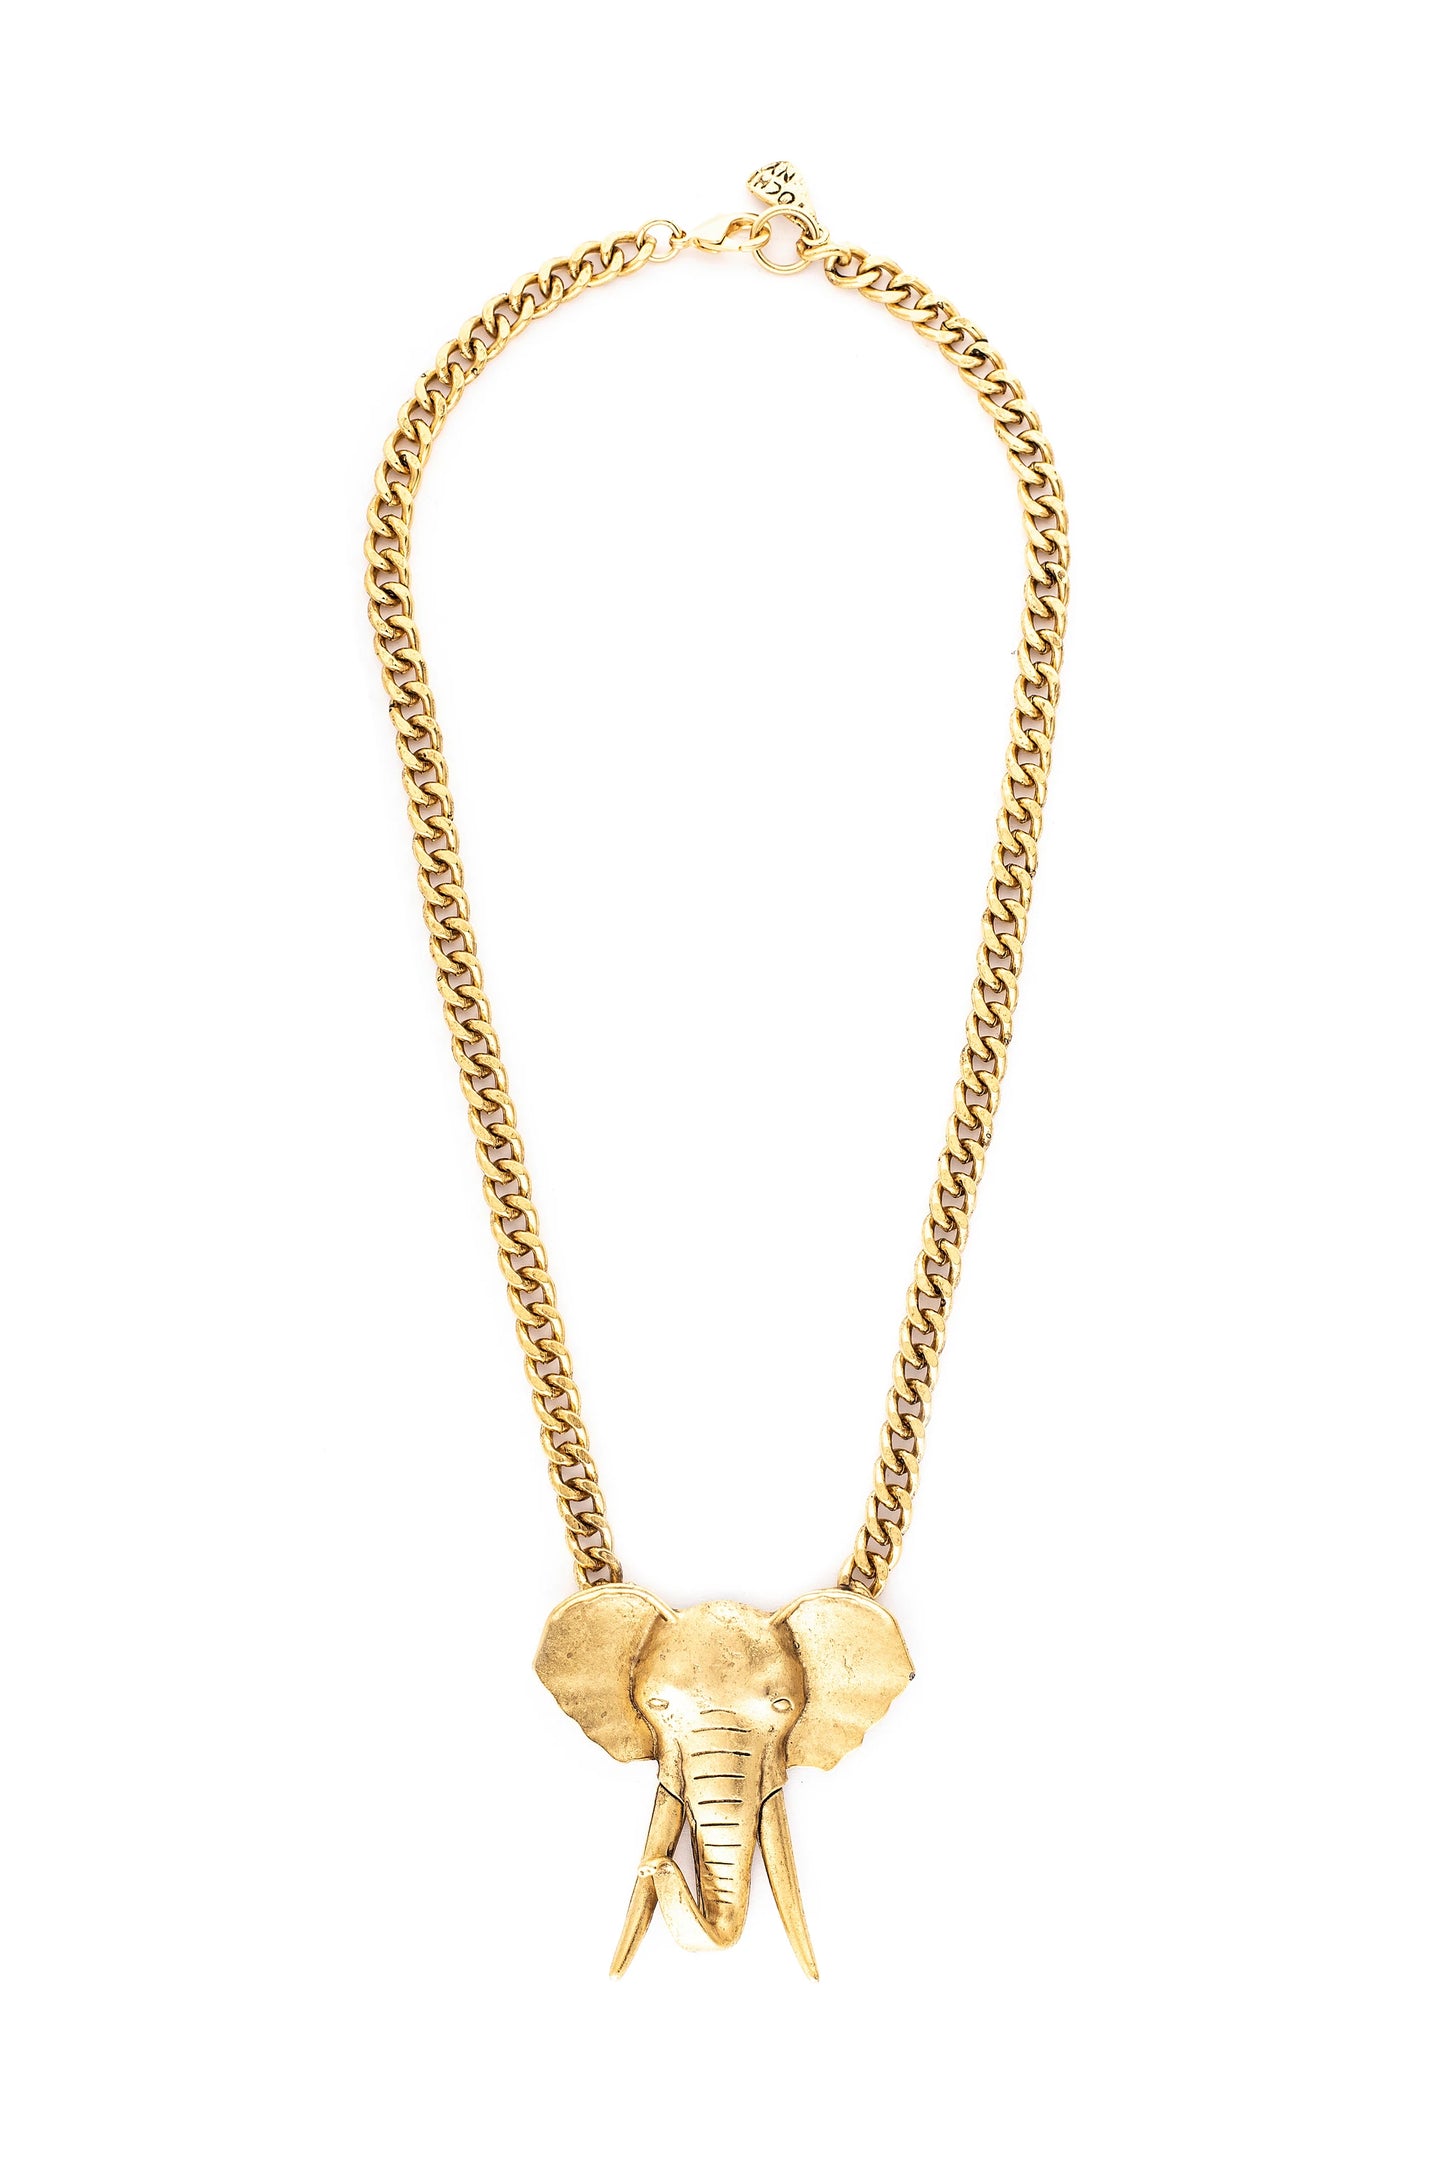 Antique Gold Chain Necklace w/ 3D Animal Pendant